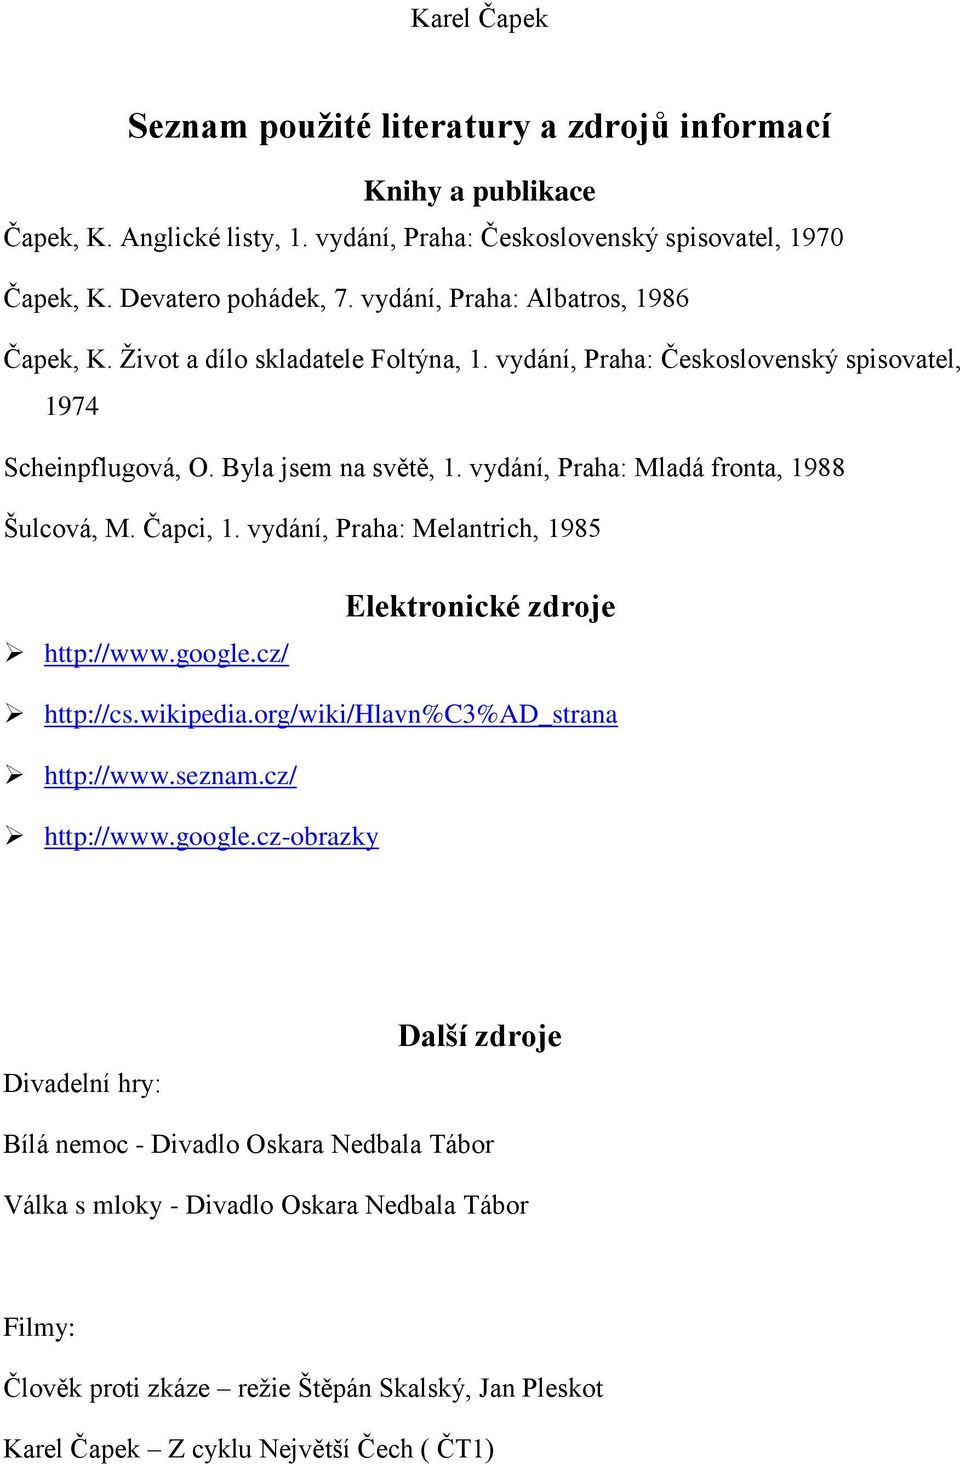 vydání, Praha: Mladá fronta, 1988 Šulcová, M. Čapci, 1. vydání, Praha: Melantrich, 1985 http://www.google.cz/ Elektronické zdroje http://cs.wikipedia.org/wiki/hlavn%c3%ad_strana http://www.